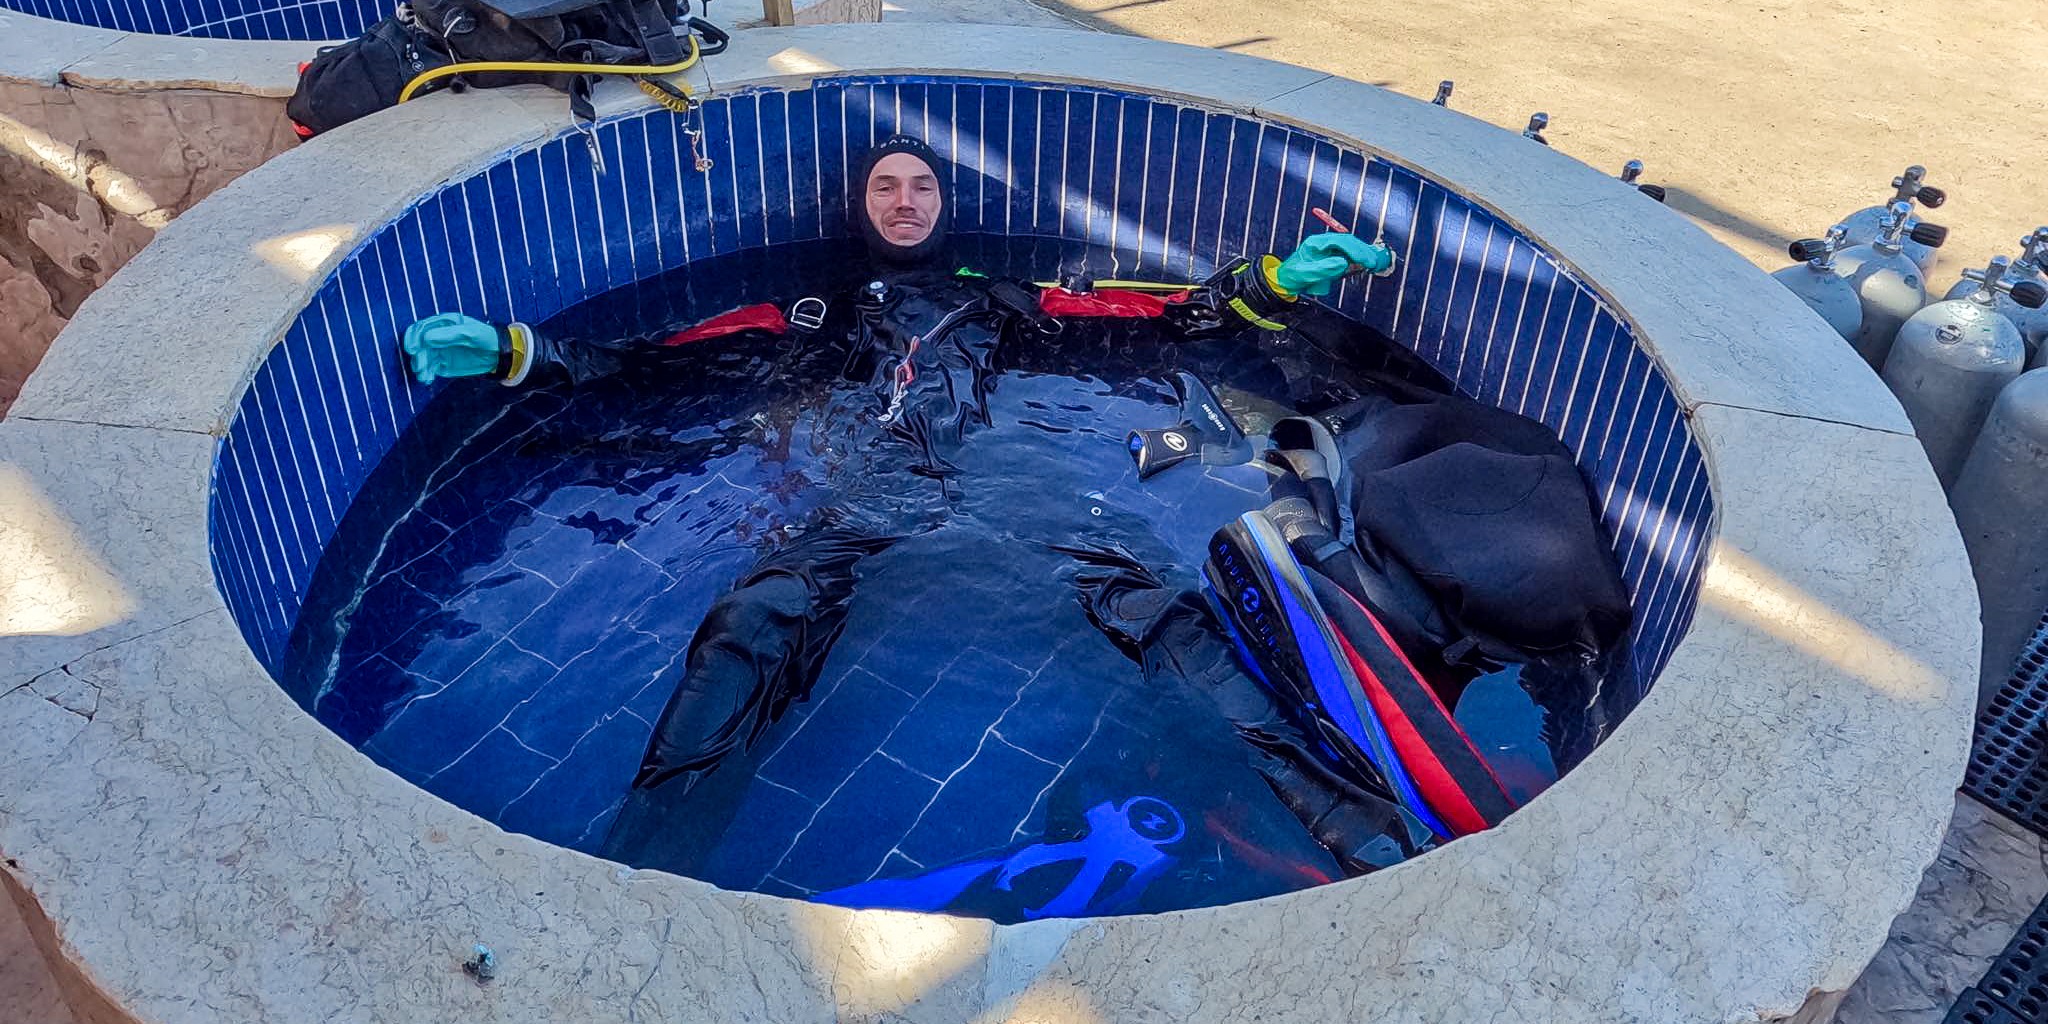 Dry suit maintenance / suchy oblek a jeho udrzba - ALEA Divers